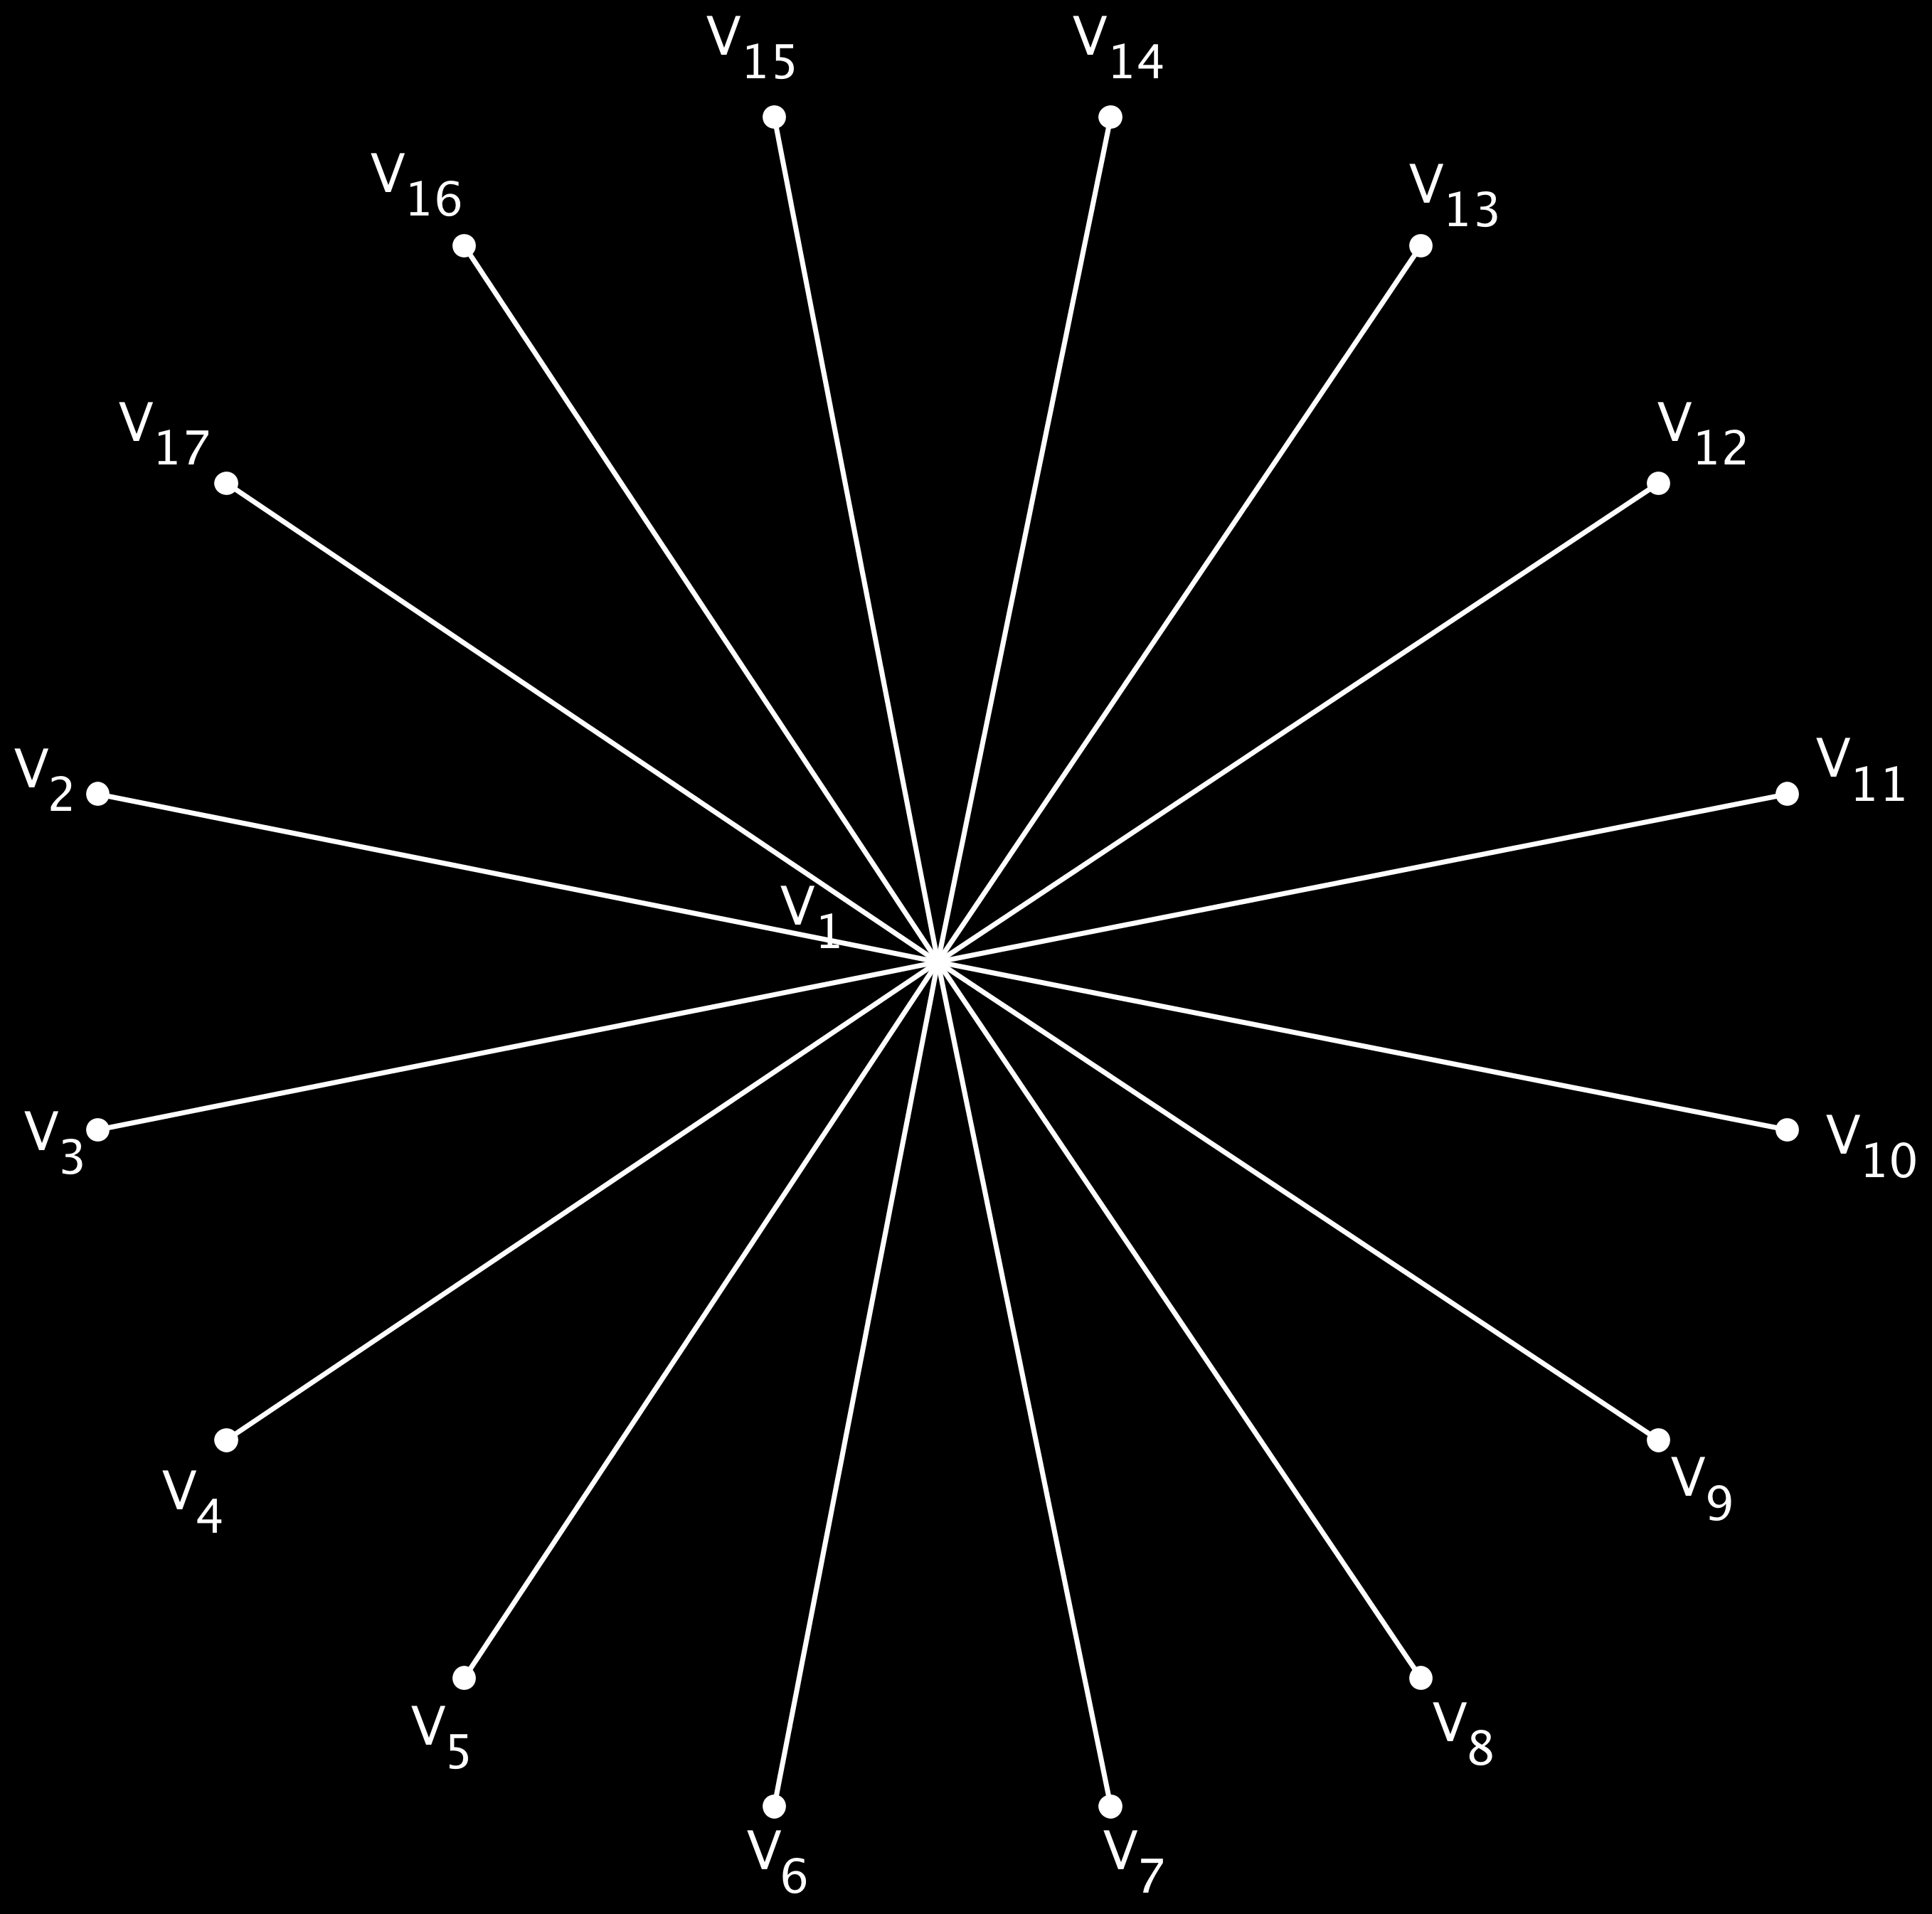 24 CAPÍTULO 2. NOÇÕES SOBRE GRAFOS Consideremos um grafo em que cada vértice representa uma pessoa. Quando duas pessoas conversarem sobre Análise Combinatória, os conectaremos por uma aresta azul.